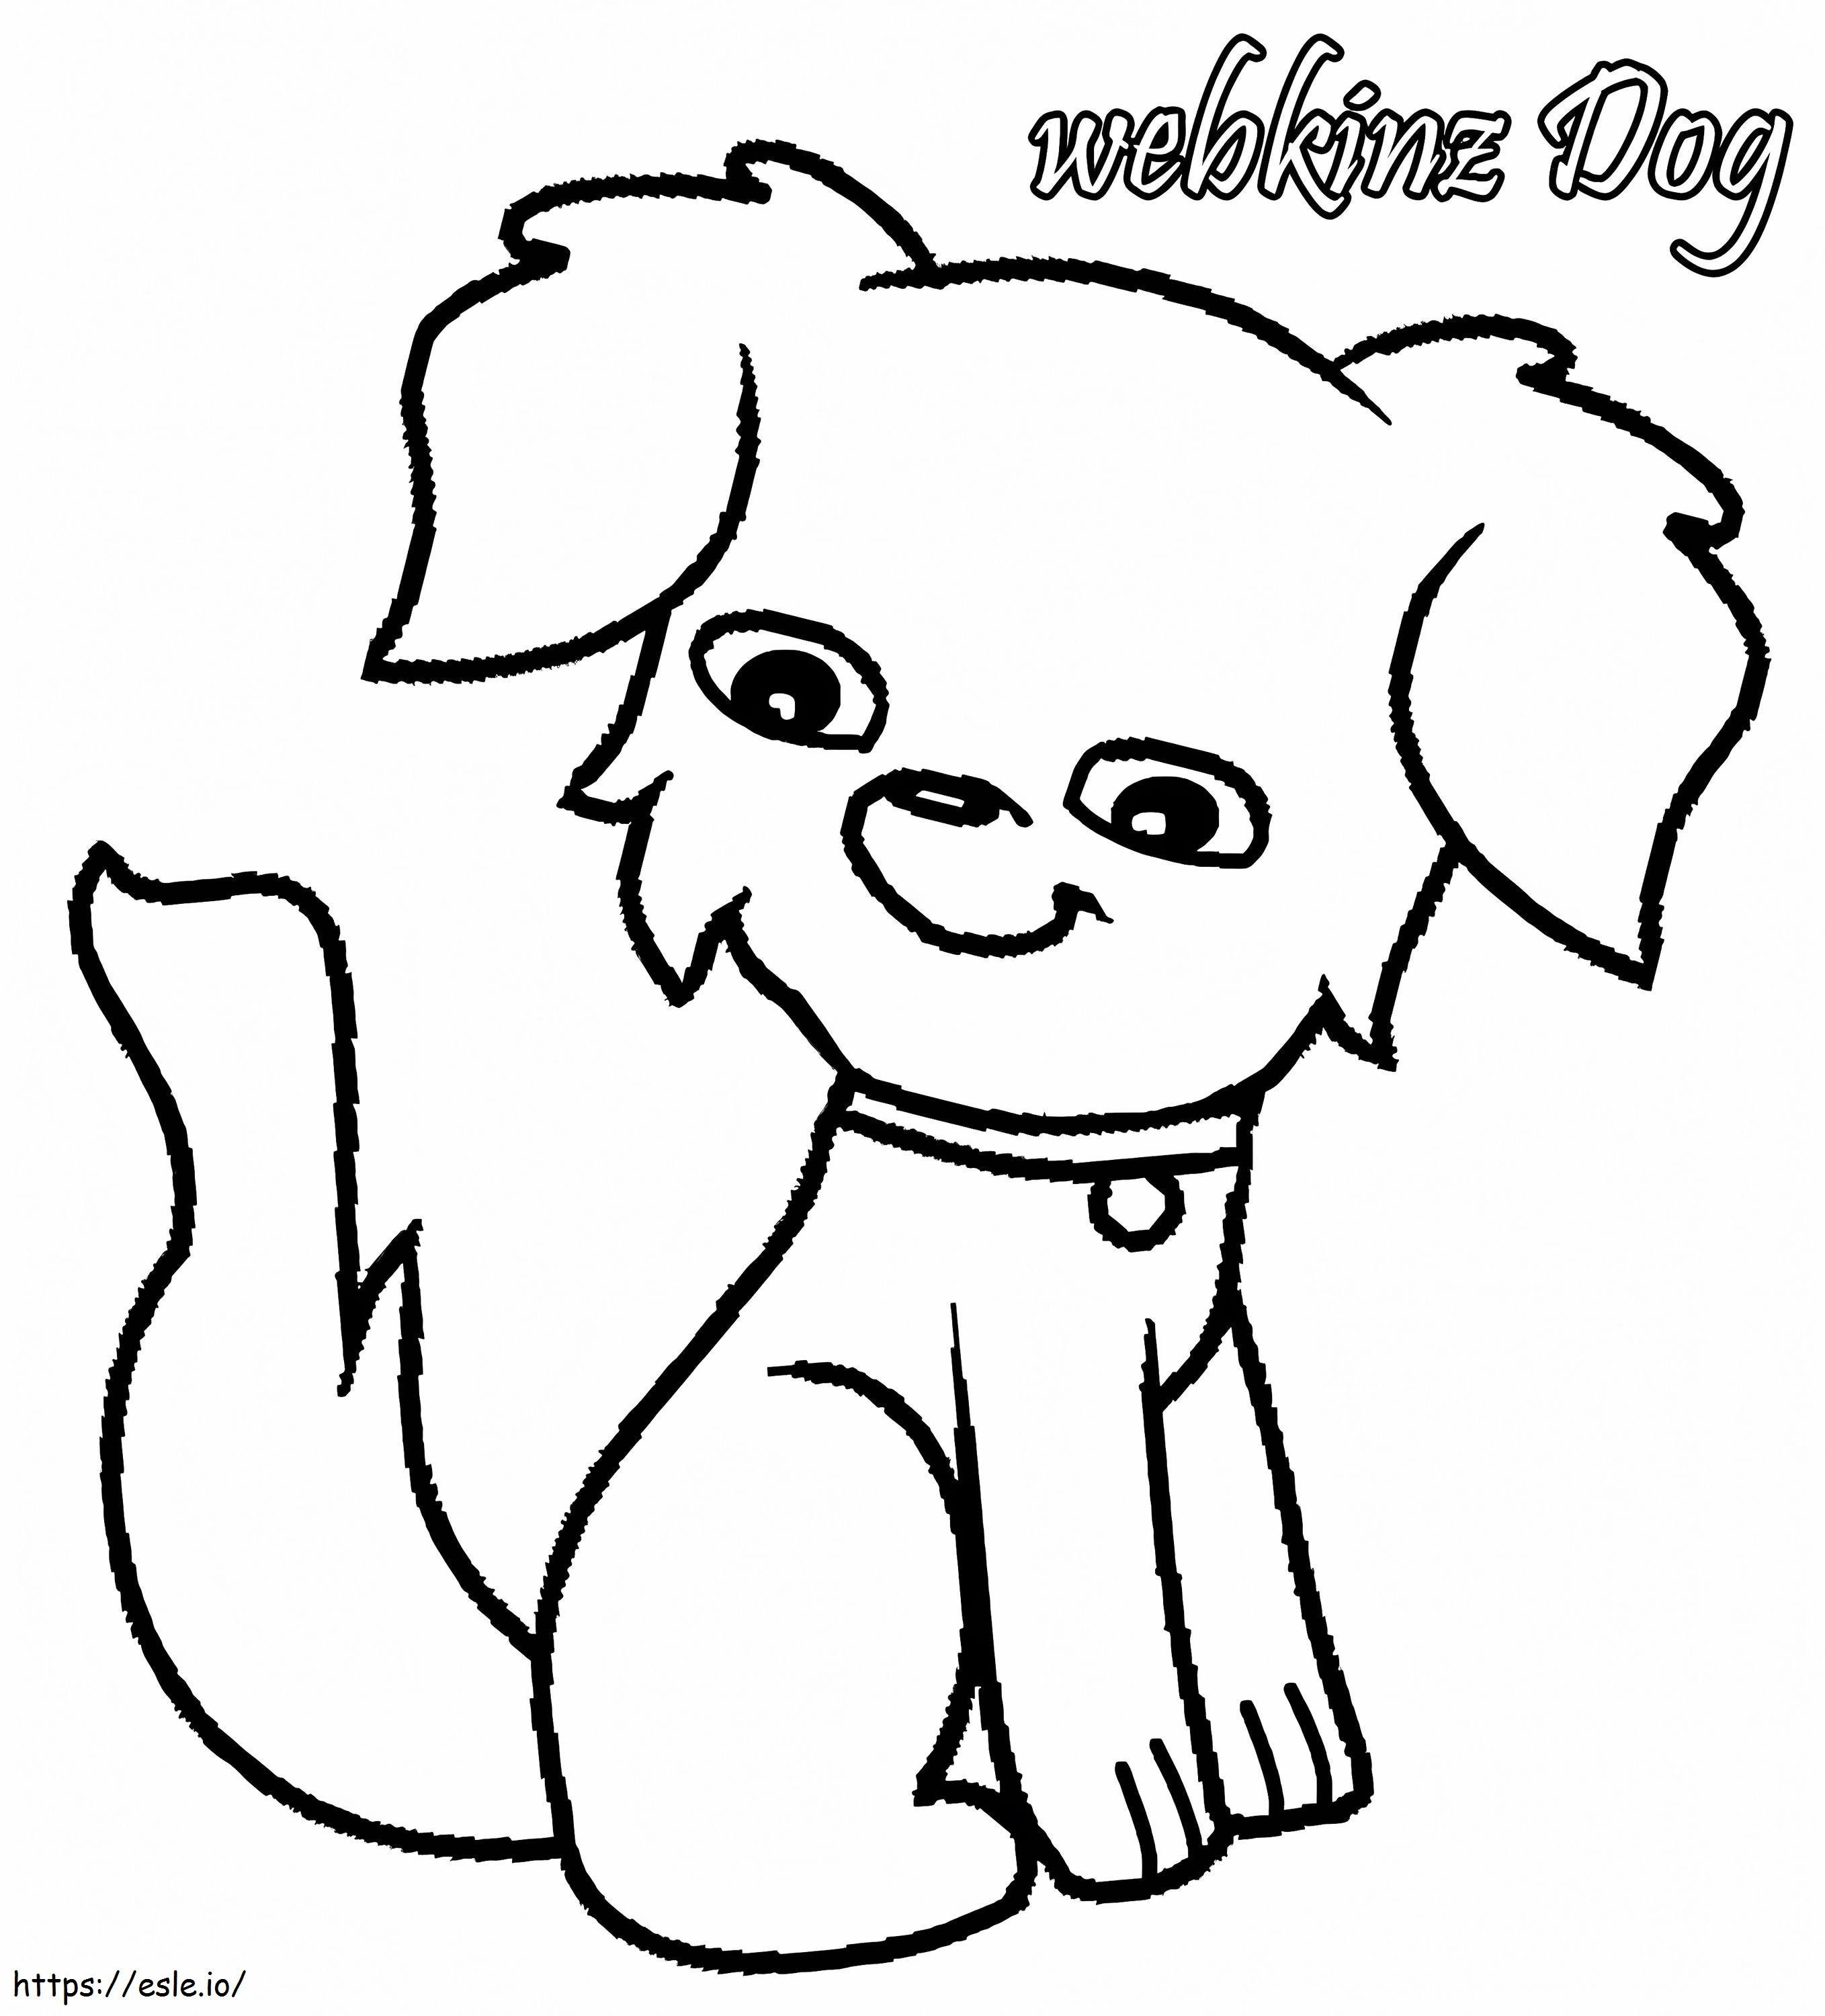 Lindo perro Webkinz para colorear